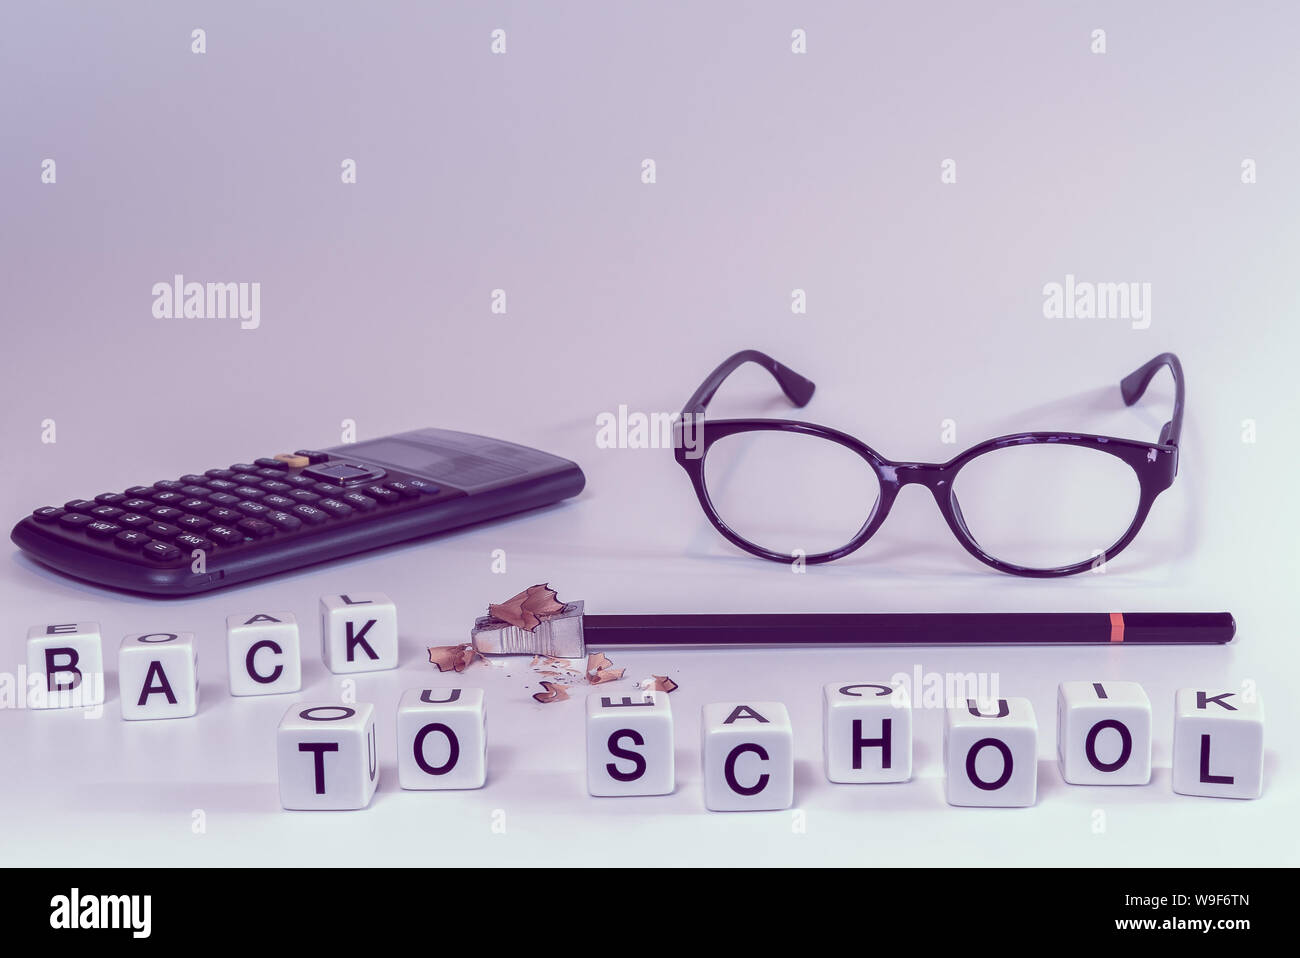 Vorderansicht von Schulmaterial mit Buchstaben Rechtschreibung der Wörter zurück zu Schule in girly rosa Farbtönen - Begriff der Student, Universität Stockfoto